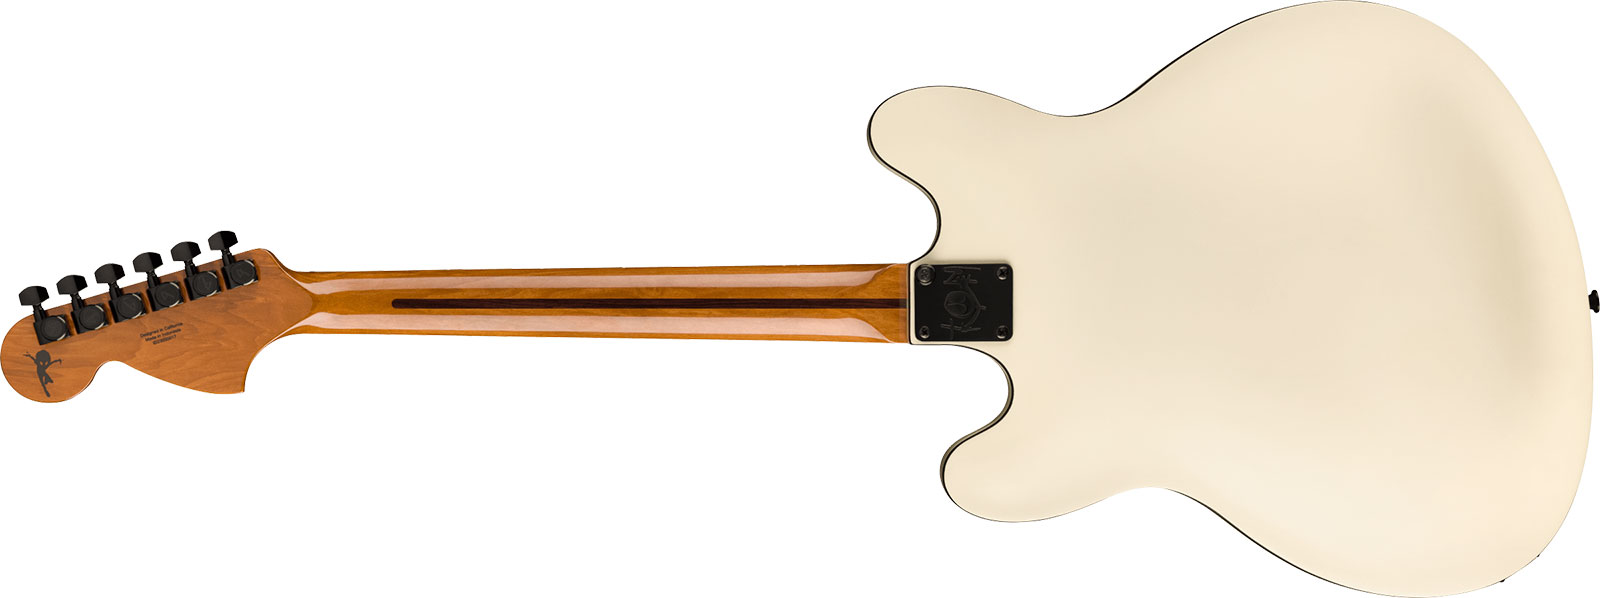 Fender Tom Delonge Starcaster Signature 1h Seymour Duncan Ht Rw - Satin Olympic White - Guitare Électrique 1/2 Caisse - Variation 1